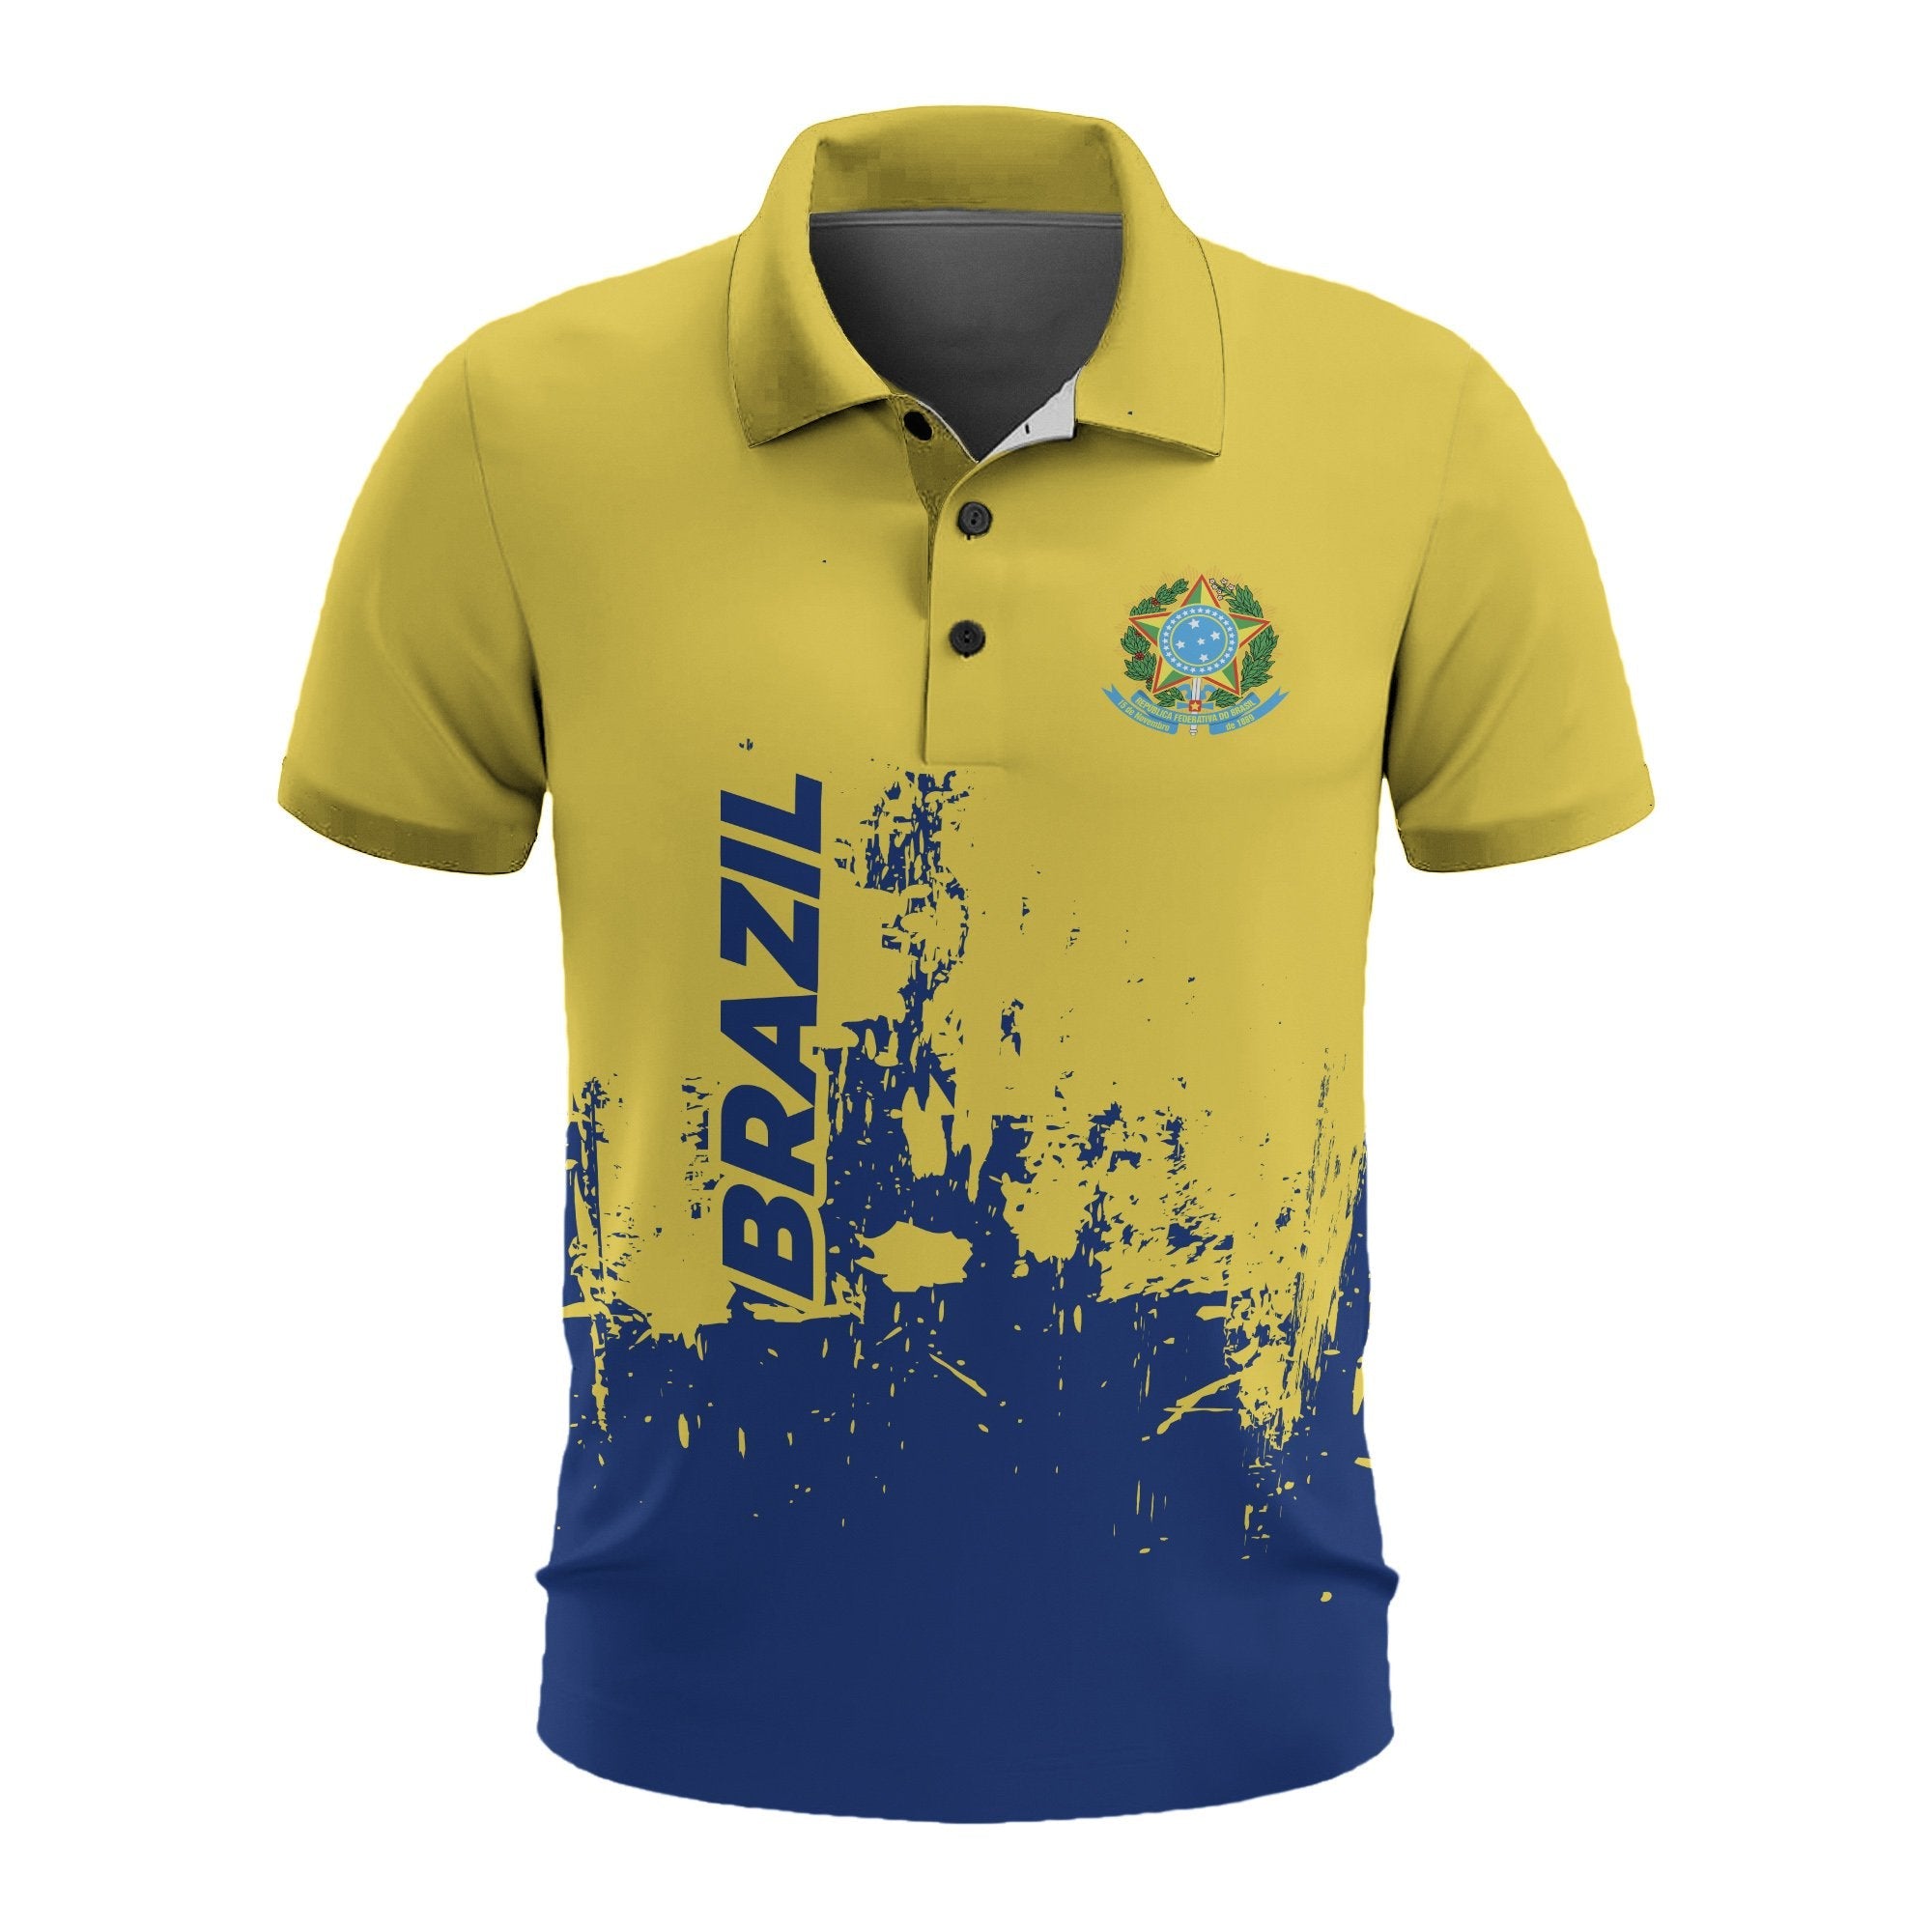 brazil-mens-all-over-print-polo-shirt-model-t55